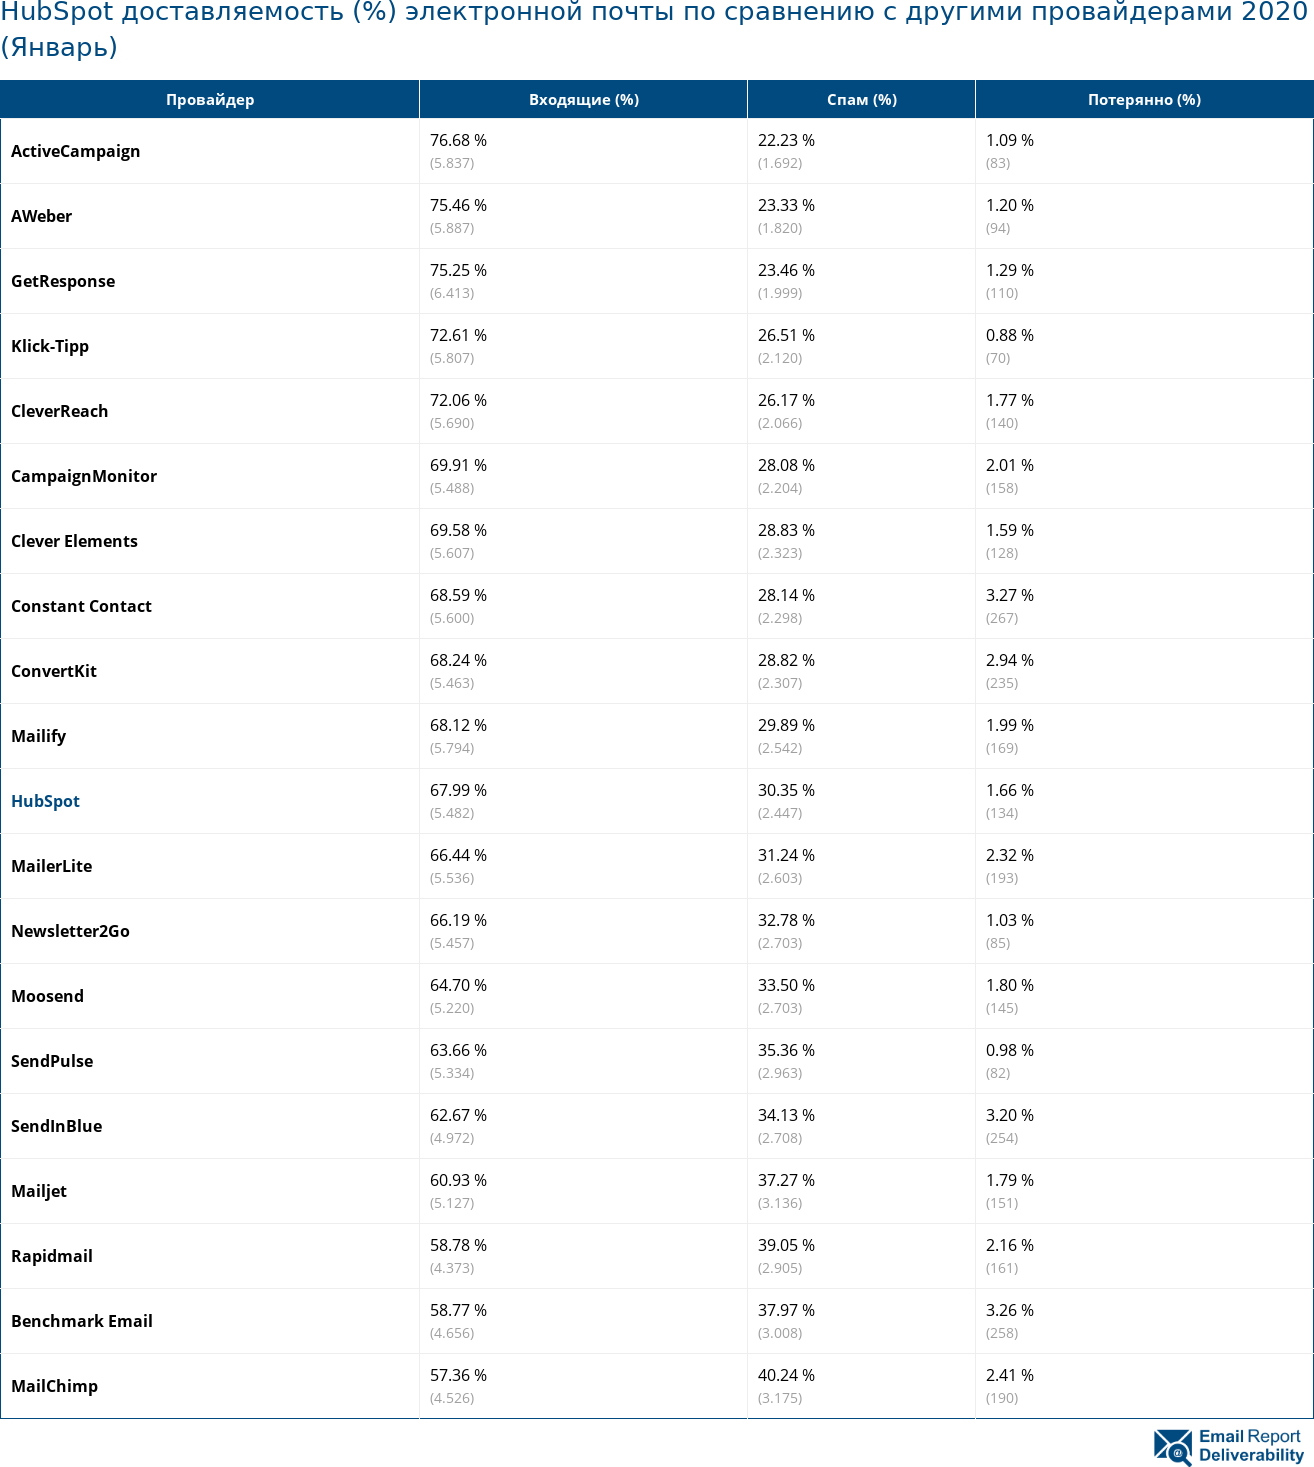 HubSpot доставляемость (%) электронной почты по сравнению с другими провайдерами 2020 (Январь)